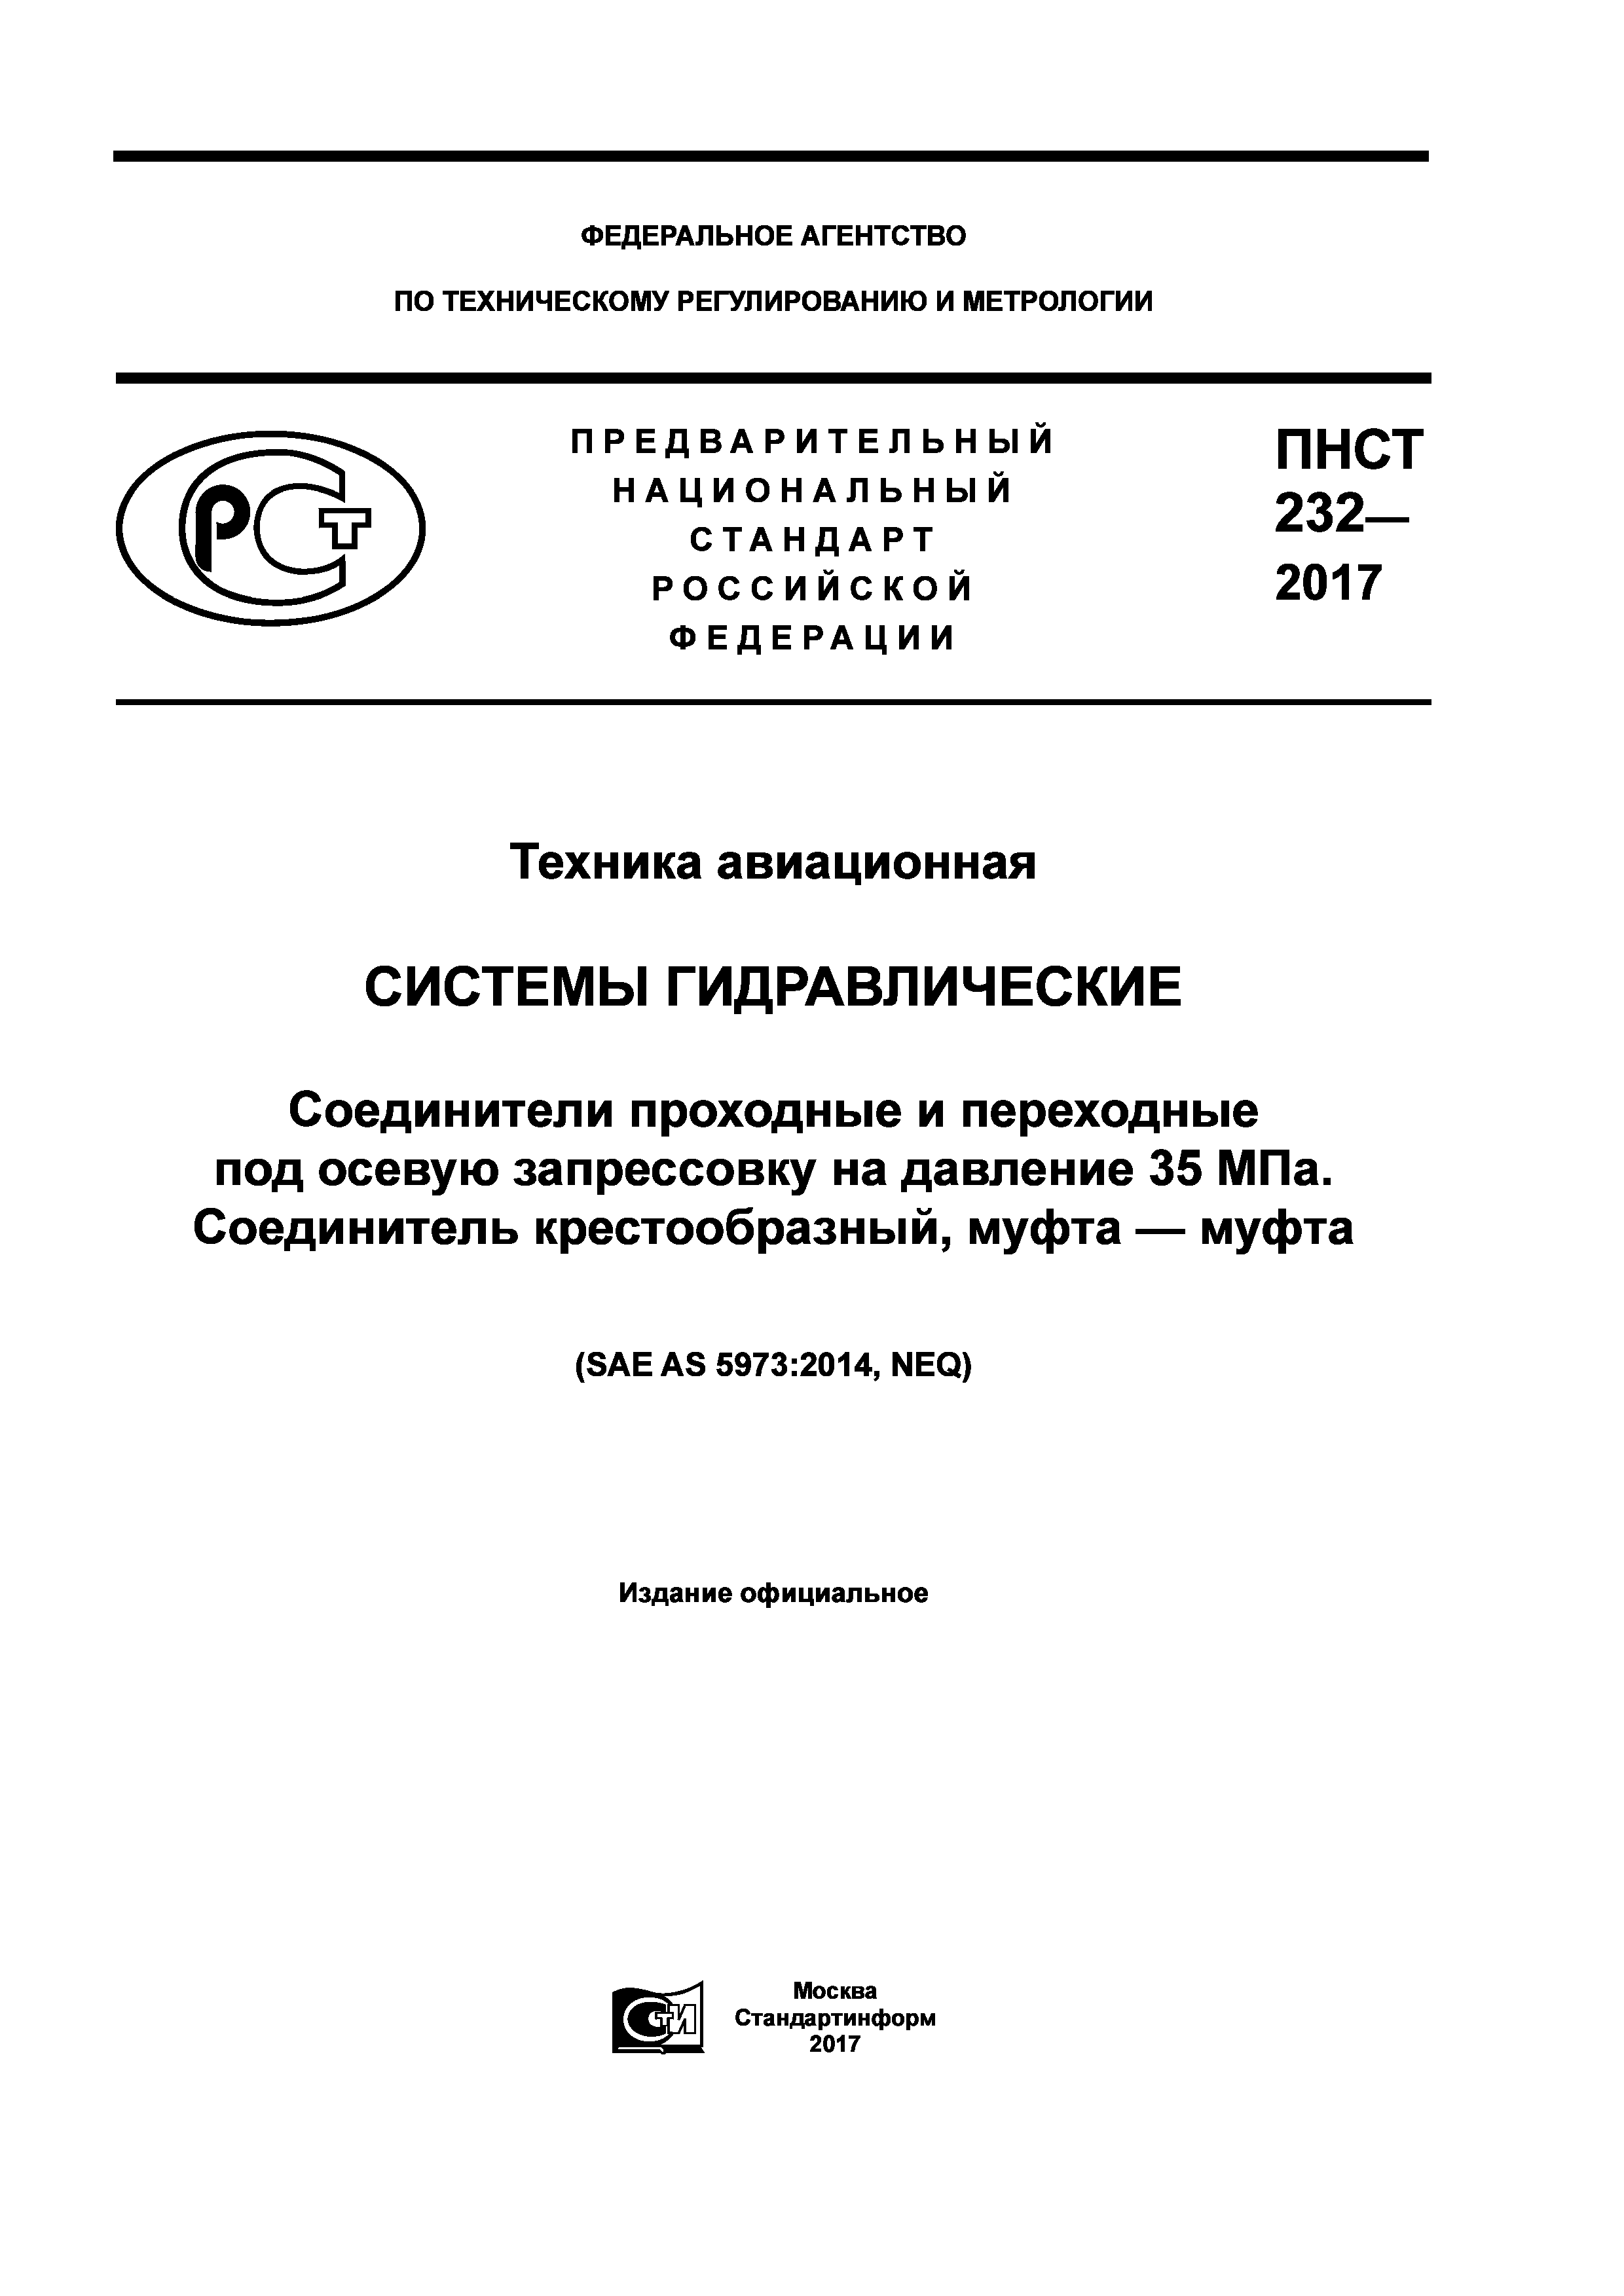 ПНСТ 232-2017